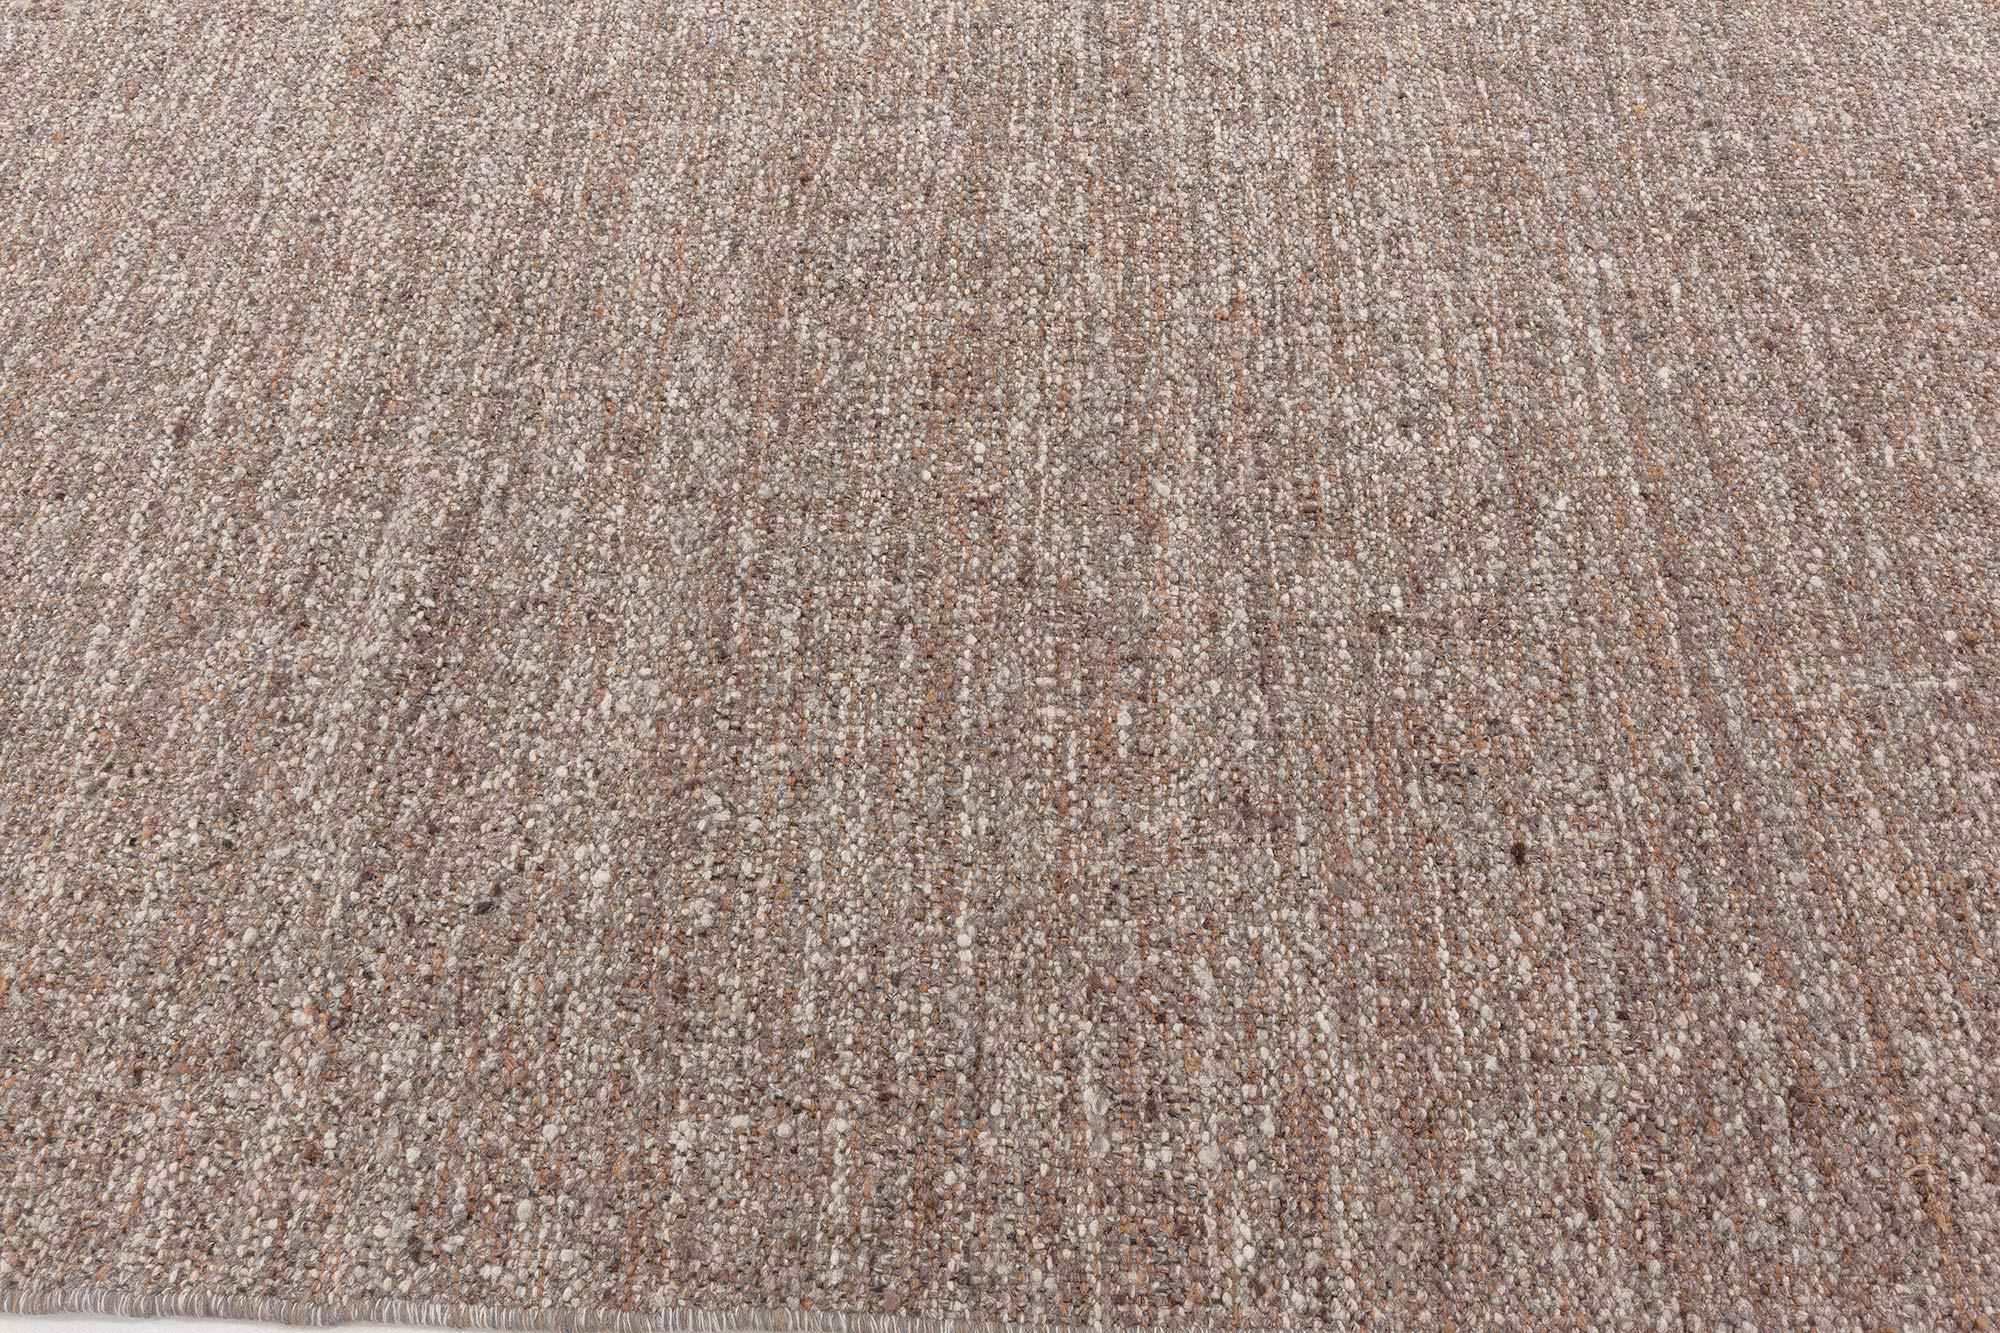 Moderner Flachgewebe-Teppich von Doris Leslie Blau
Größe: 14'6